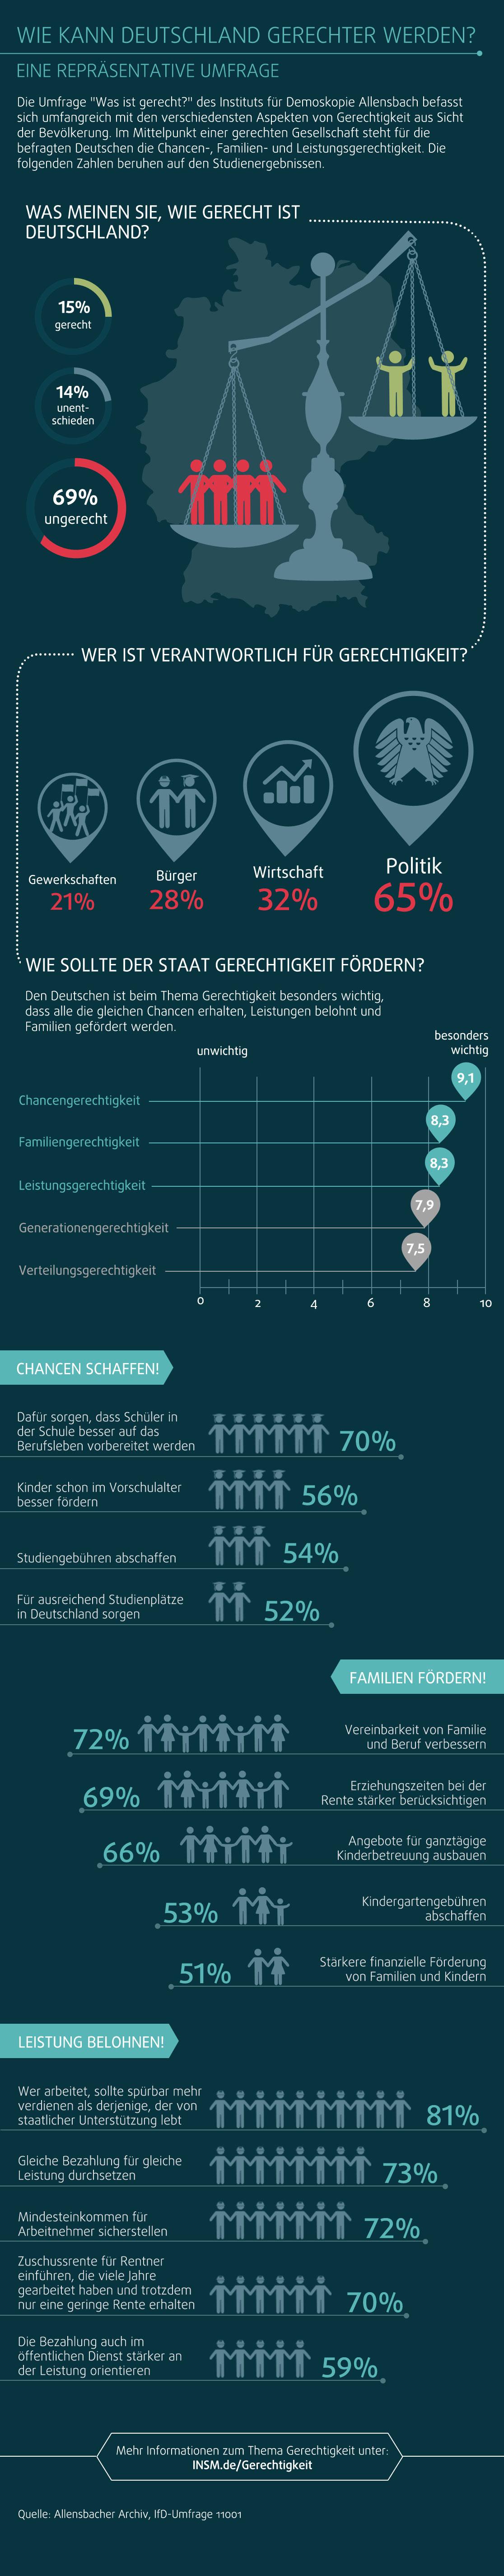 Infografik Gerechtigkeit Allensbach-Umfrage